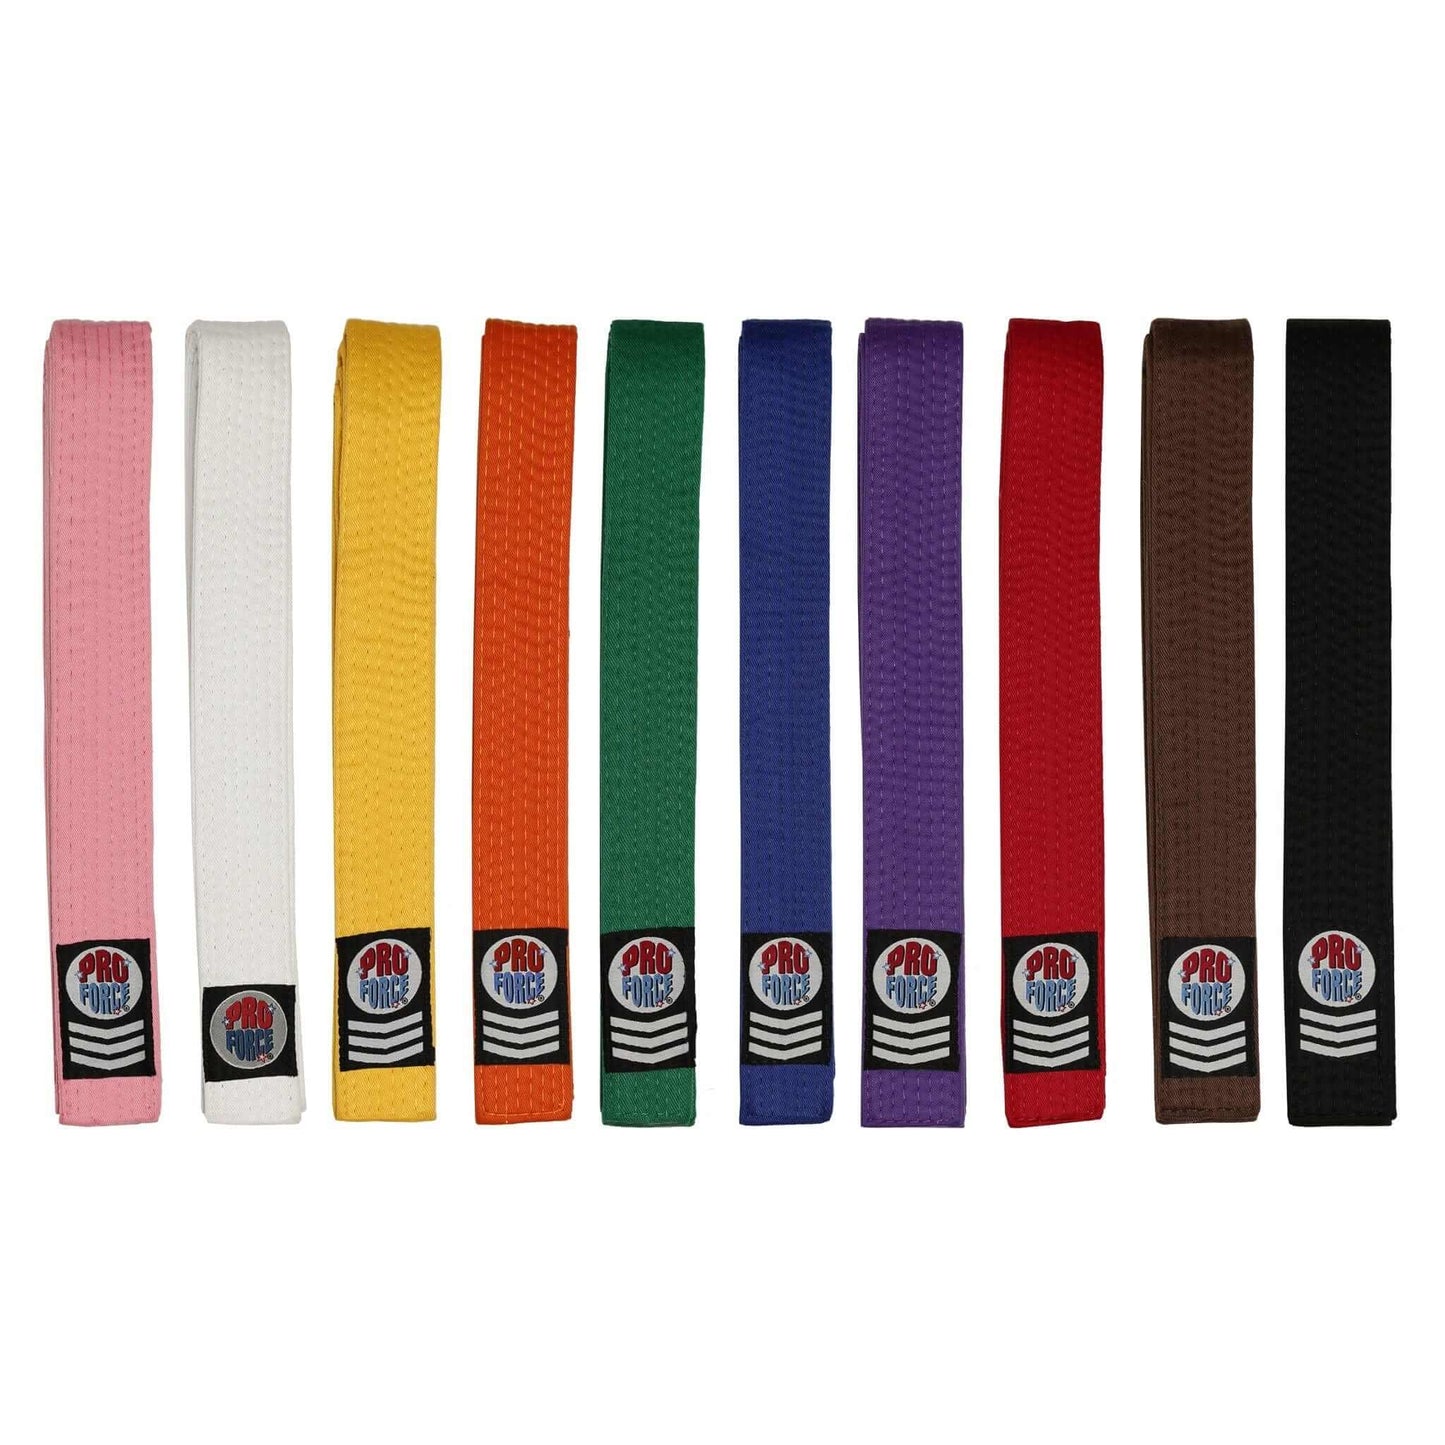 EclipseMartialArtsSupplies sporting goods ProForce II 1.5 inch Double Wrap Solid Karate Belts